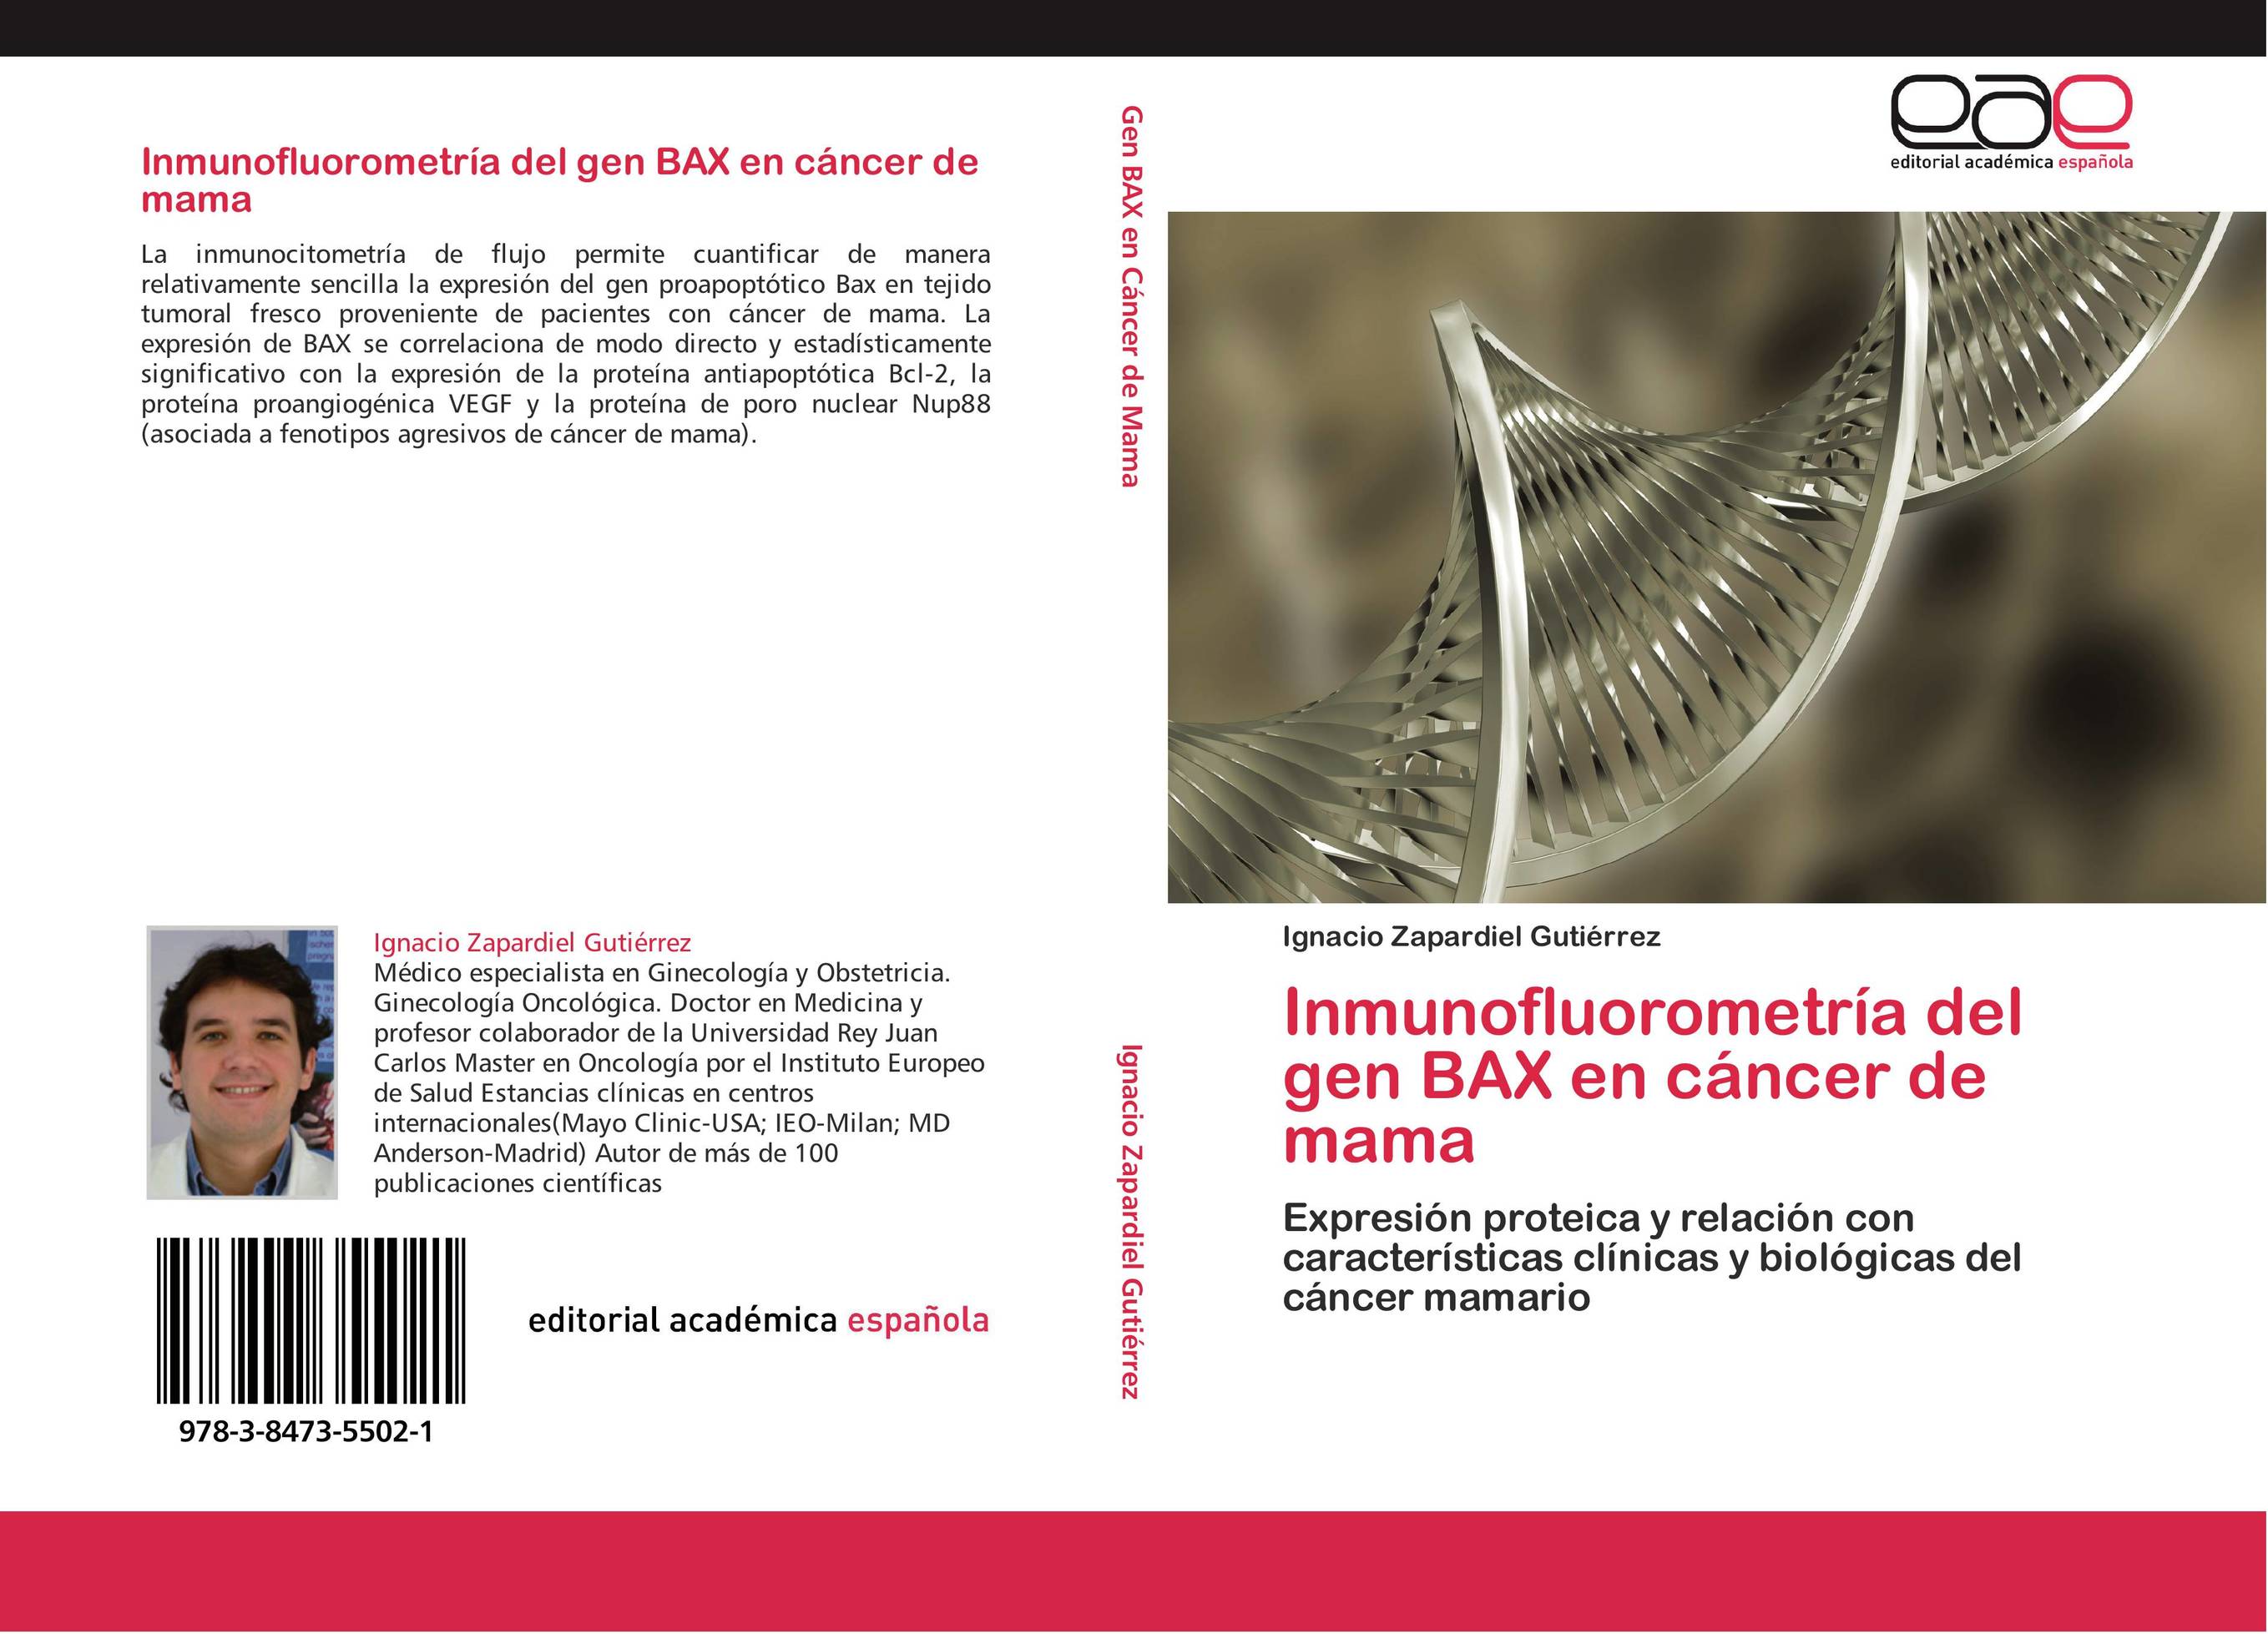 Inmunofluorometría del gen BAX en cáncer de mama